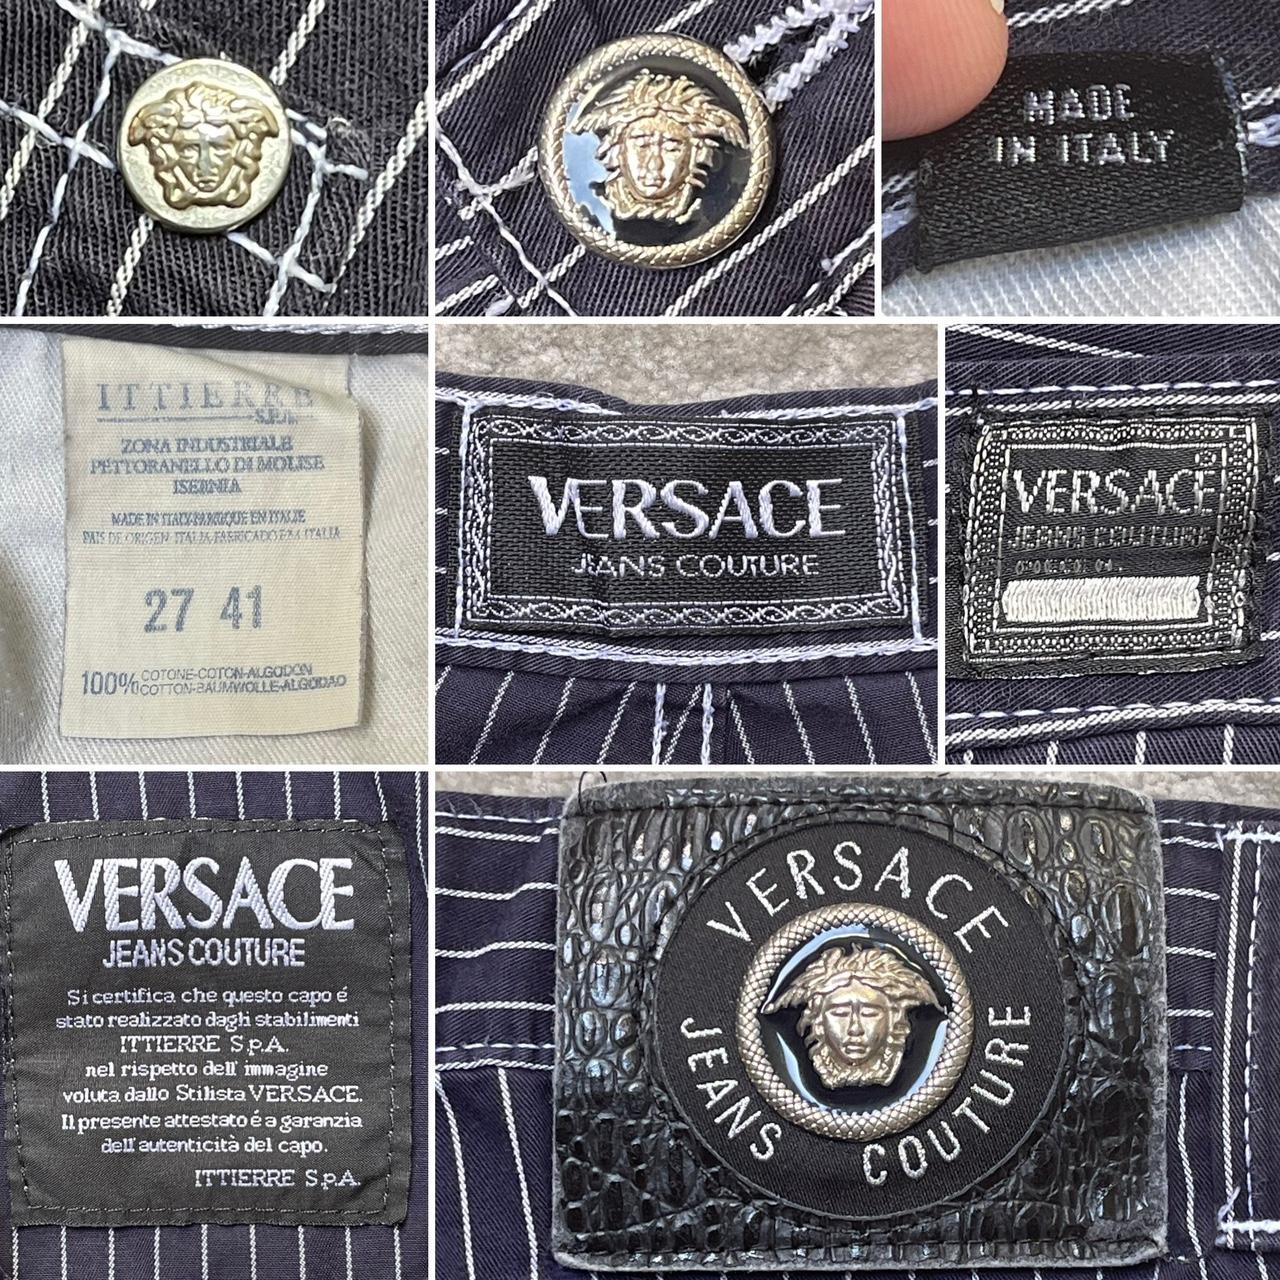 Versace Jeans Couture Vintage Authentic Denim Slim... - Depop